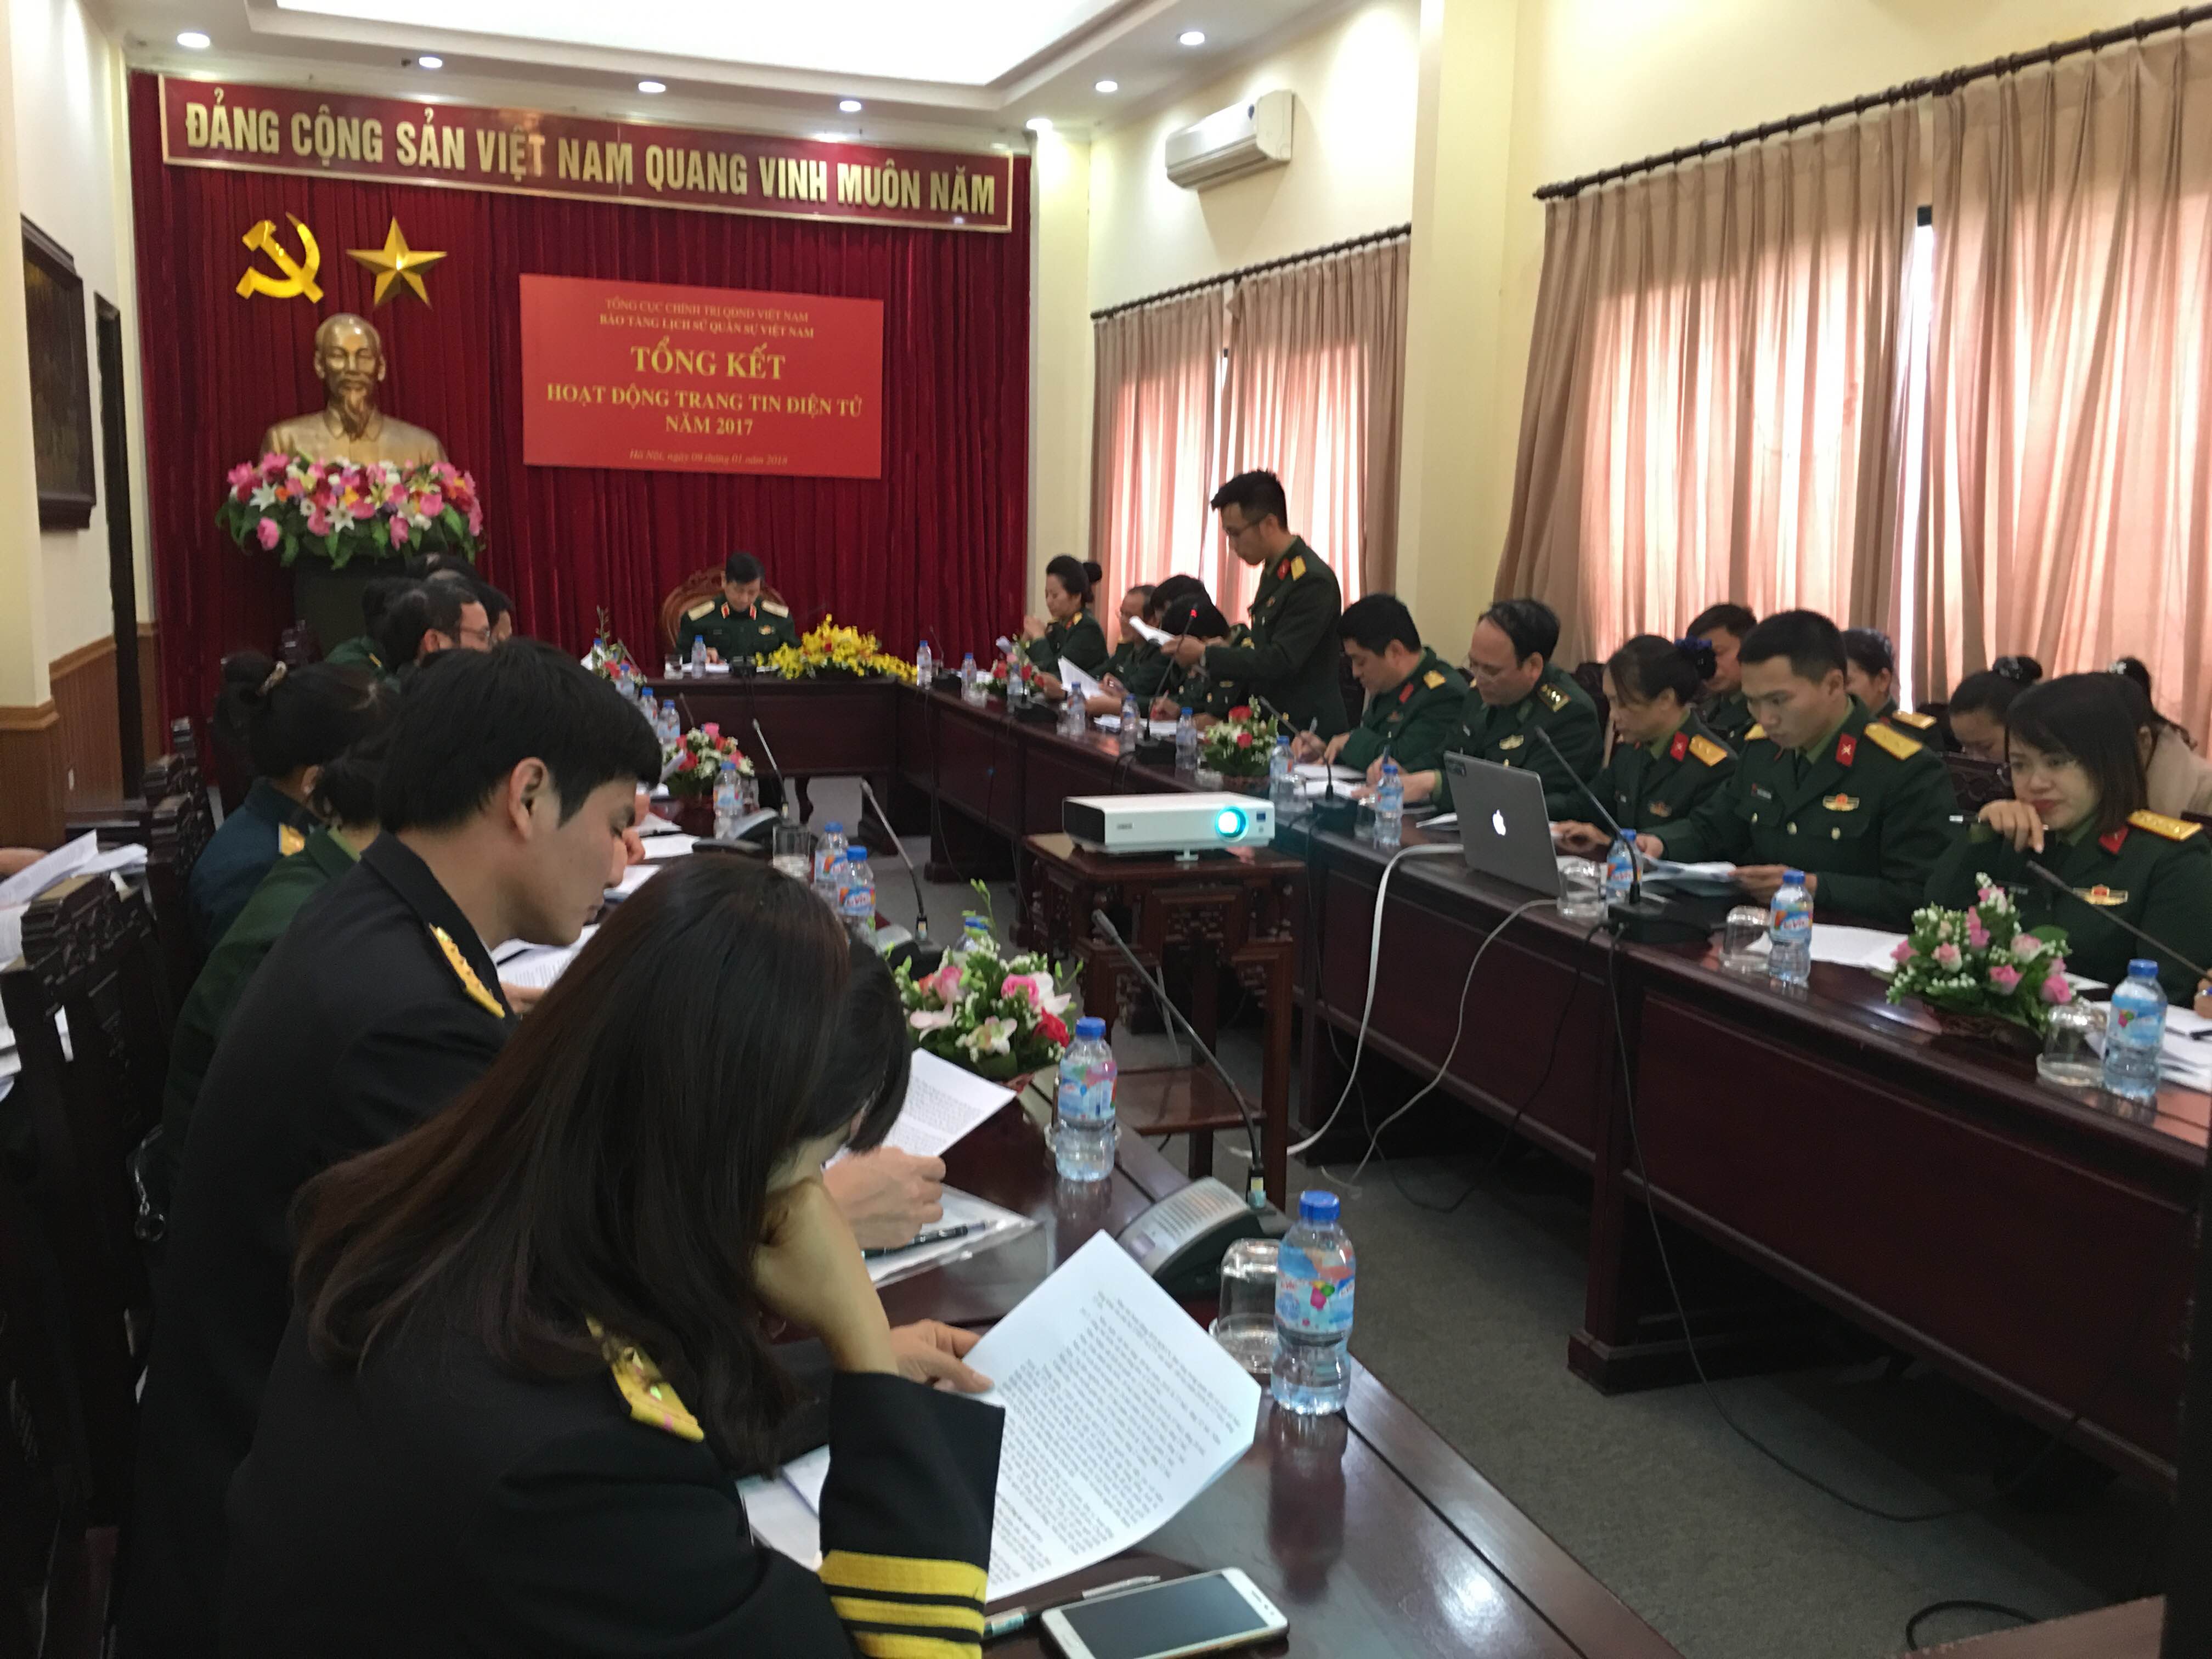 Bảo tàng Lịch sử Quân sự Việt Nam tổng kết hoạt động Trang tin điện tử năm 2017